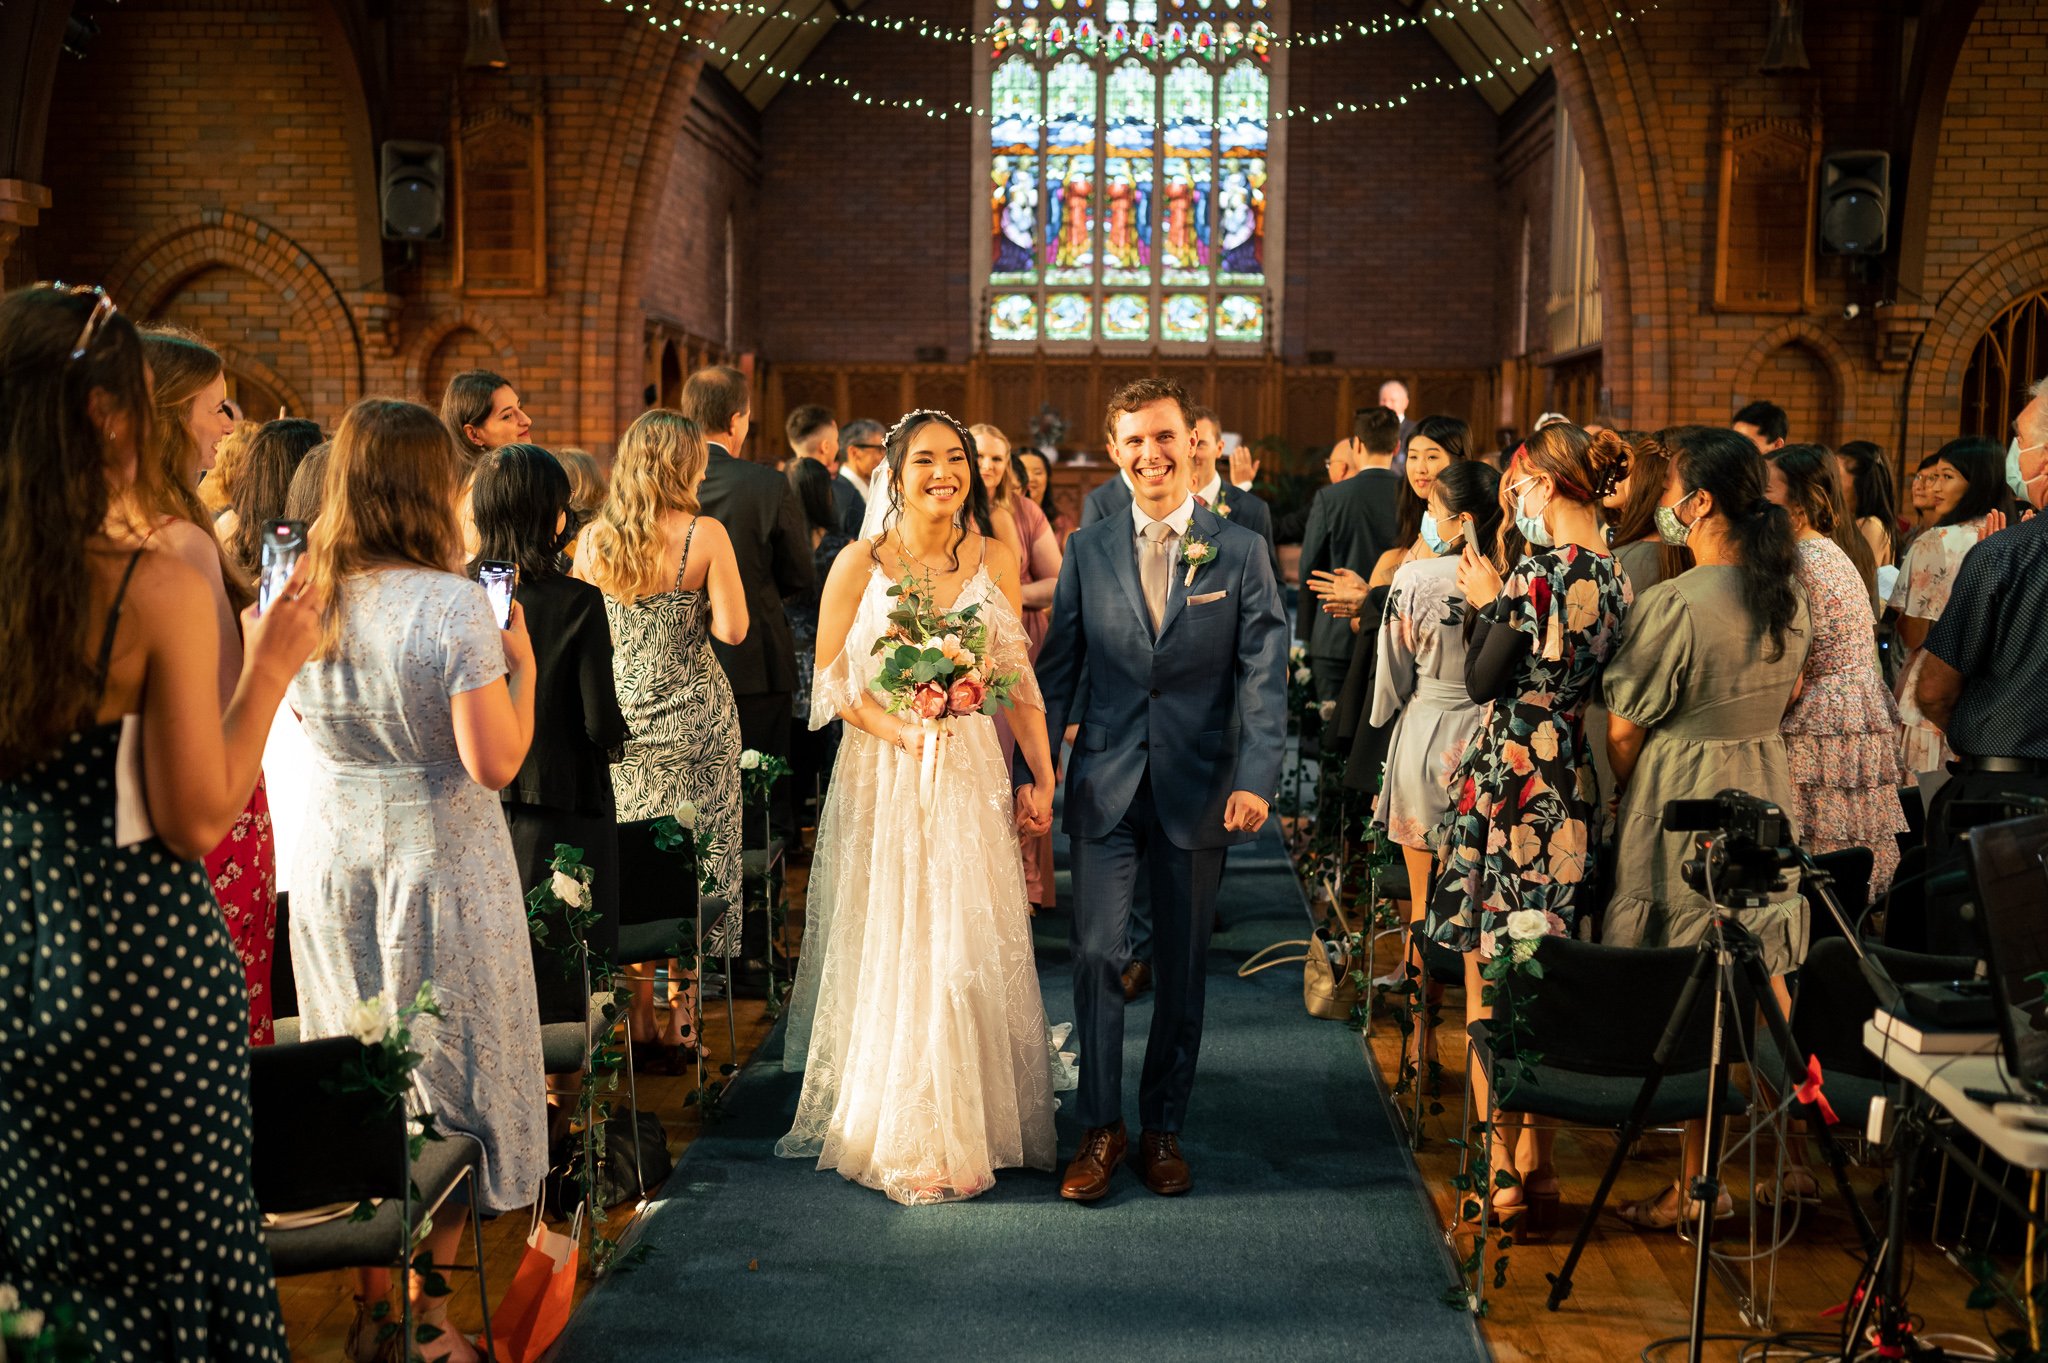 Photo of a Sydney Church Wedding taken by a Sydney Wedding Photographer